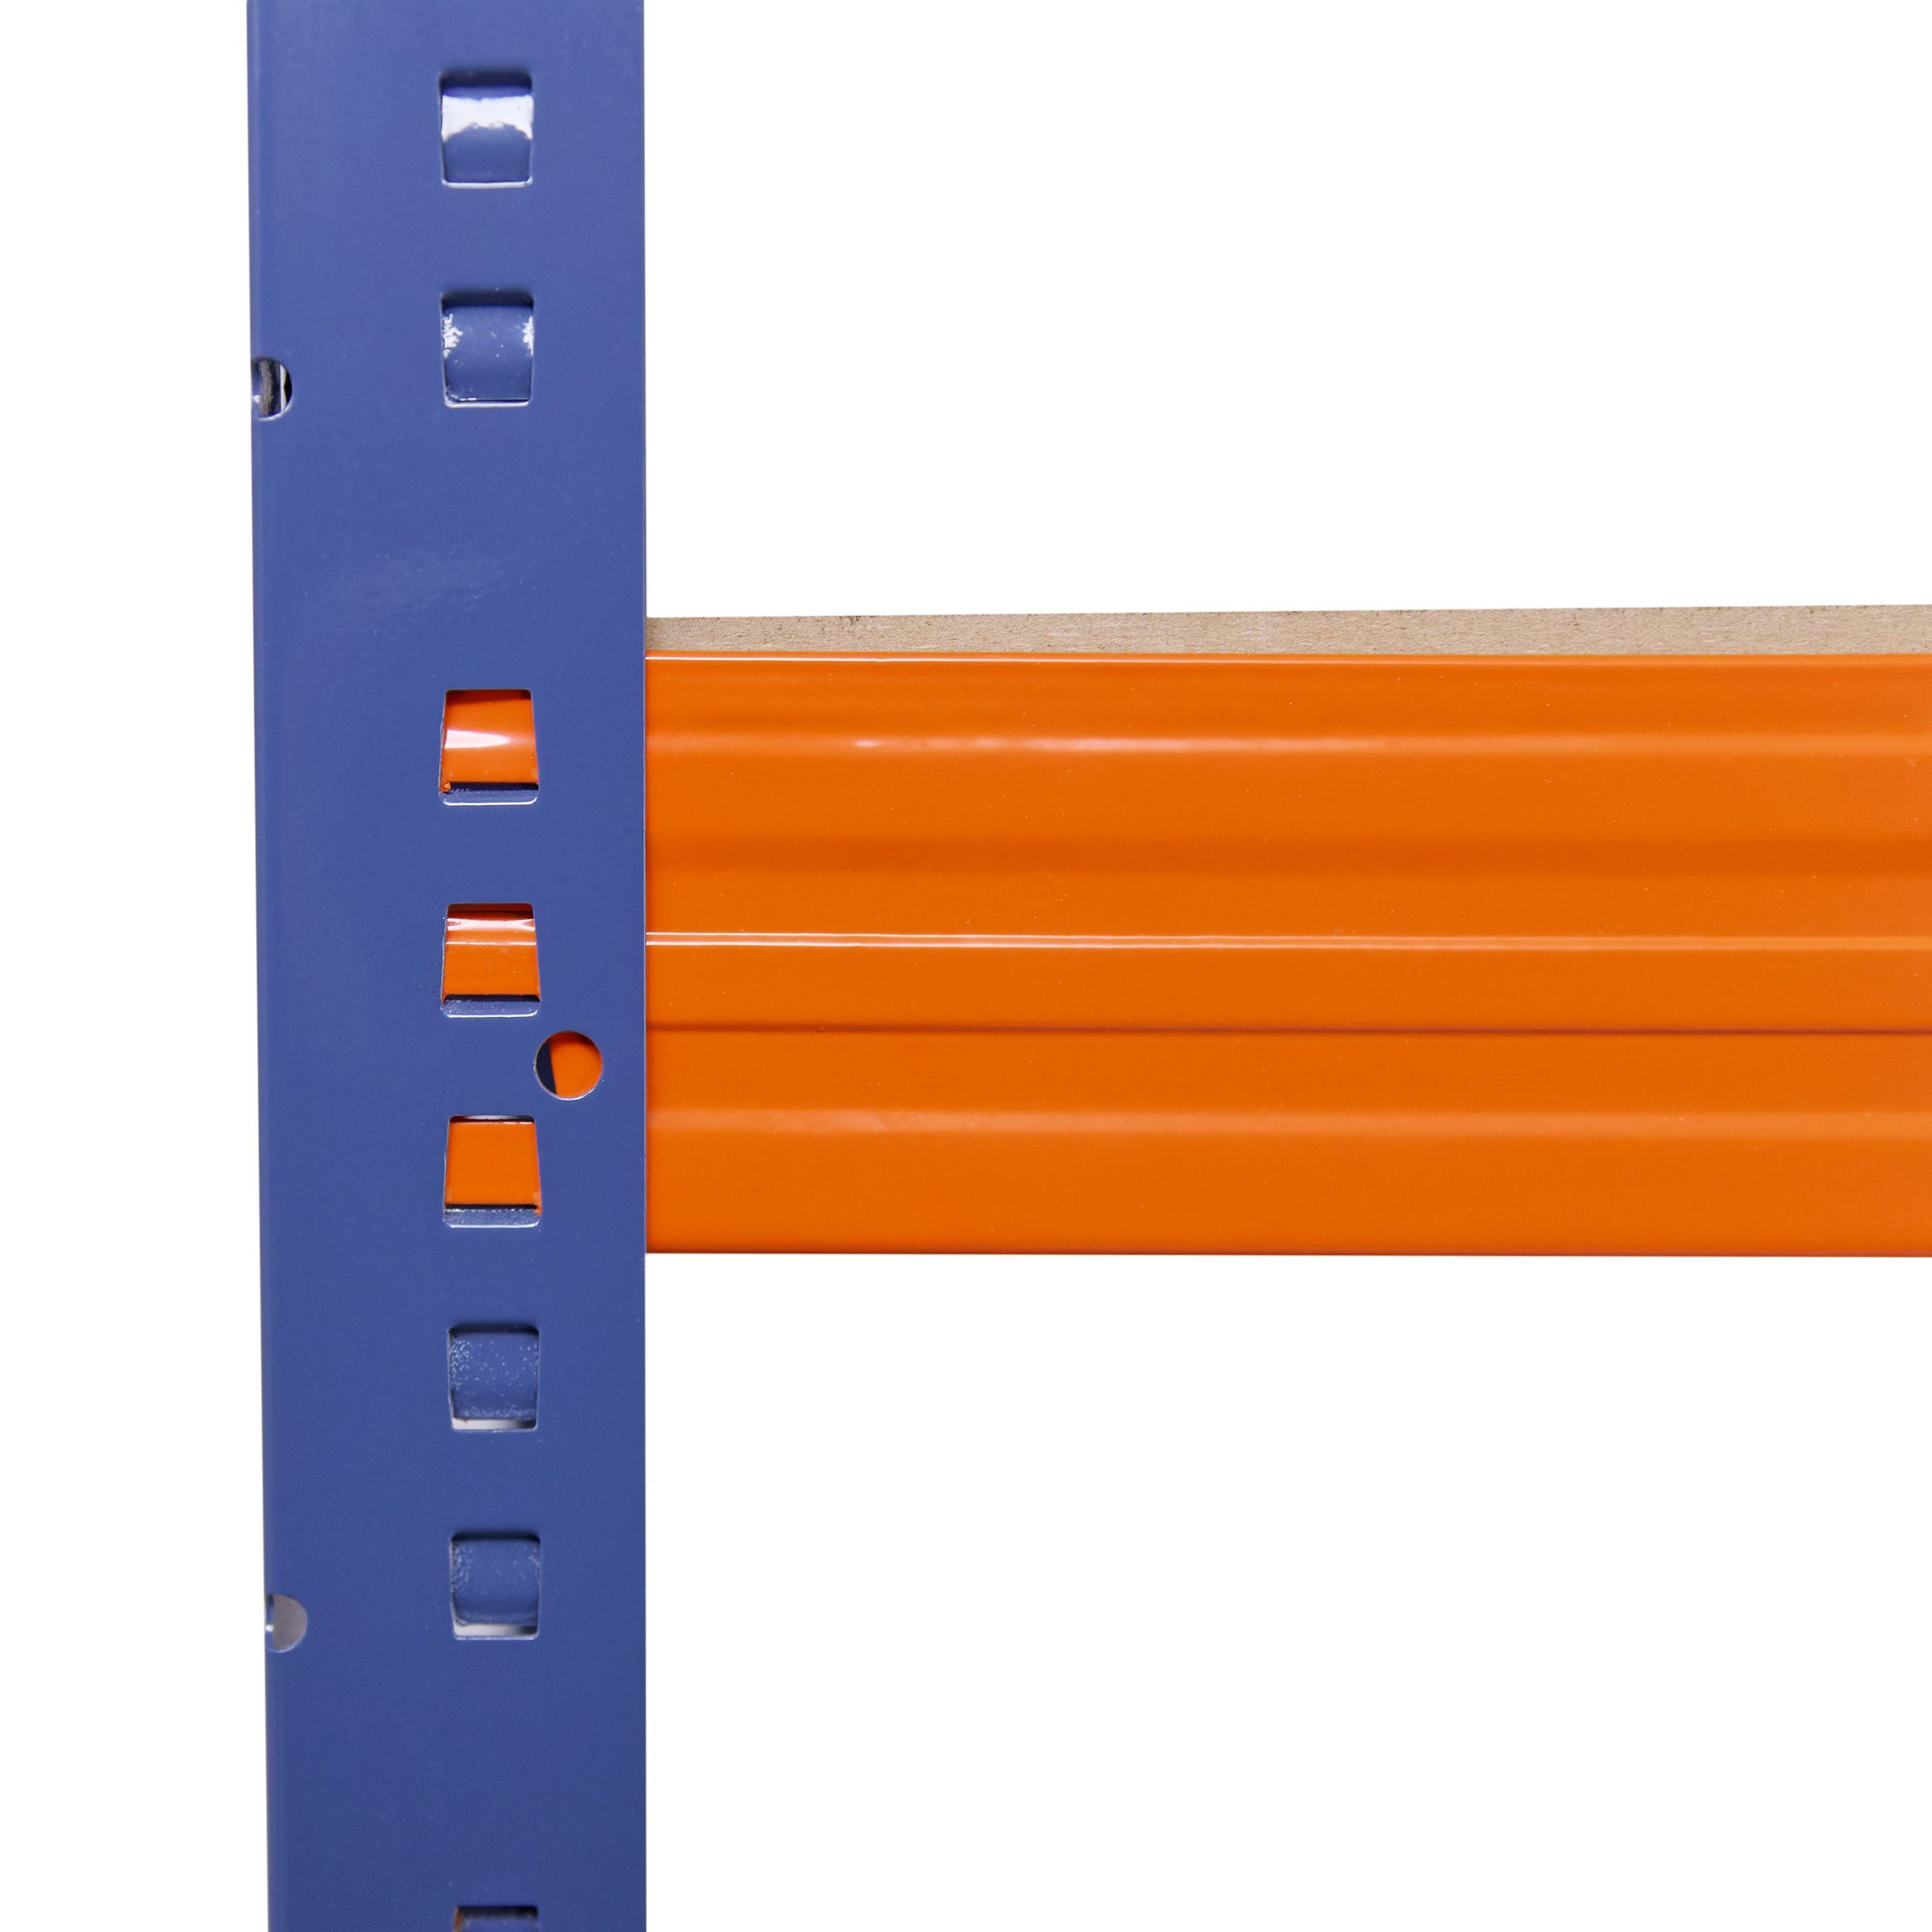 PROFI, Garagenregal, als Regale Regal Böden shelfplaza mit Werkstattregal Metall 5 Schwerlastregal Lagerregal, 200kg Tragkraft, Metallregal blau-orange, 180x120x45cm Steckregal & Kellerregal, je